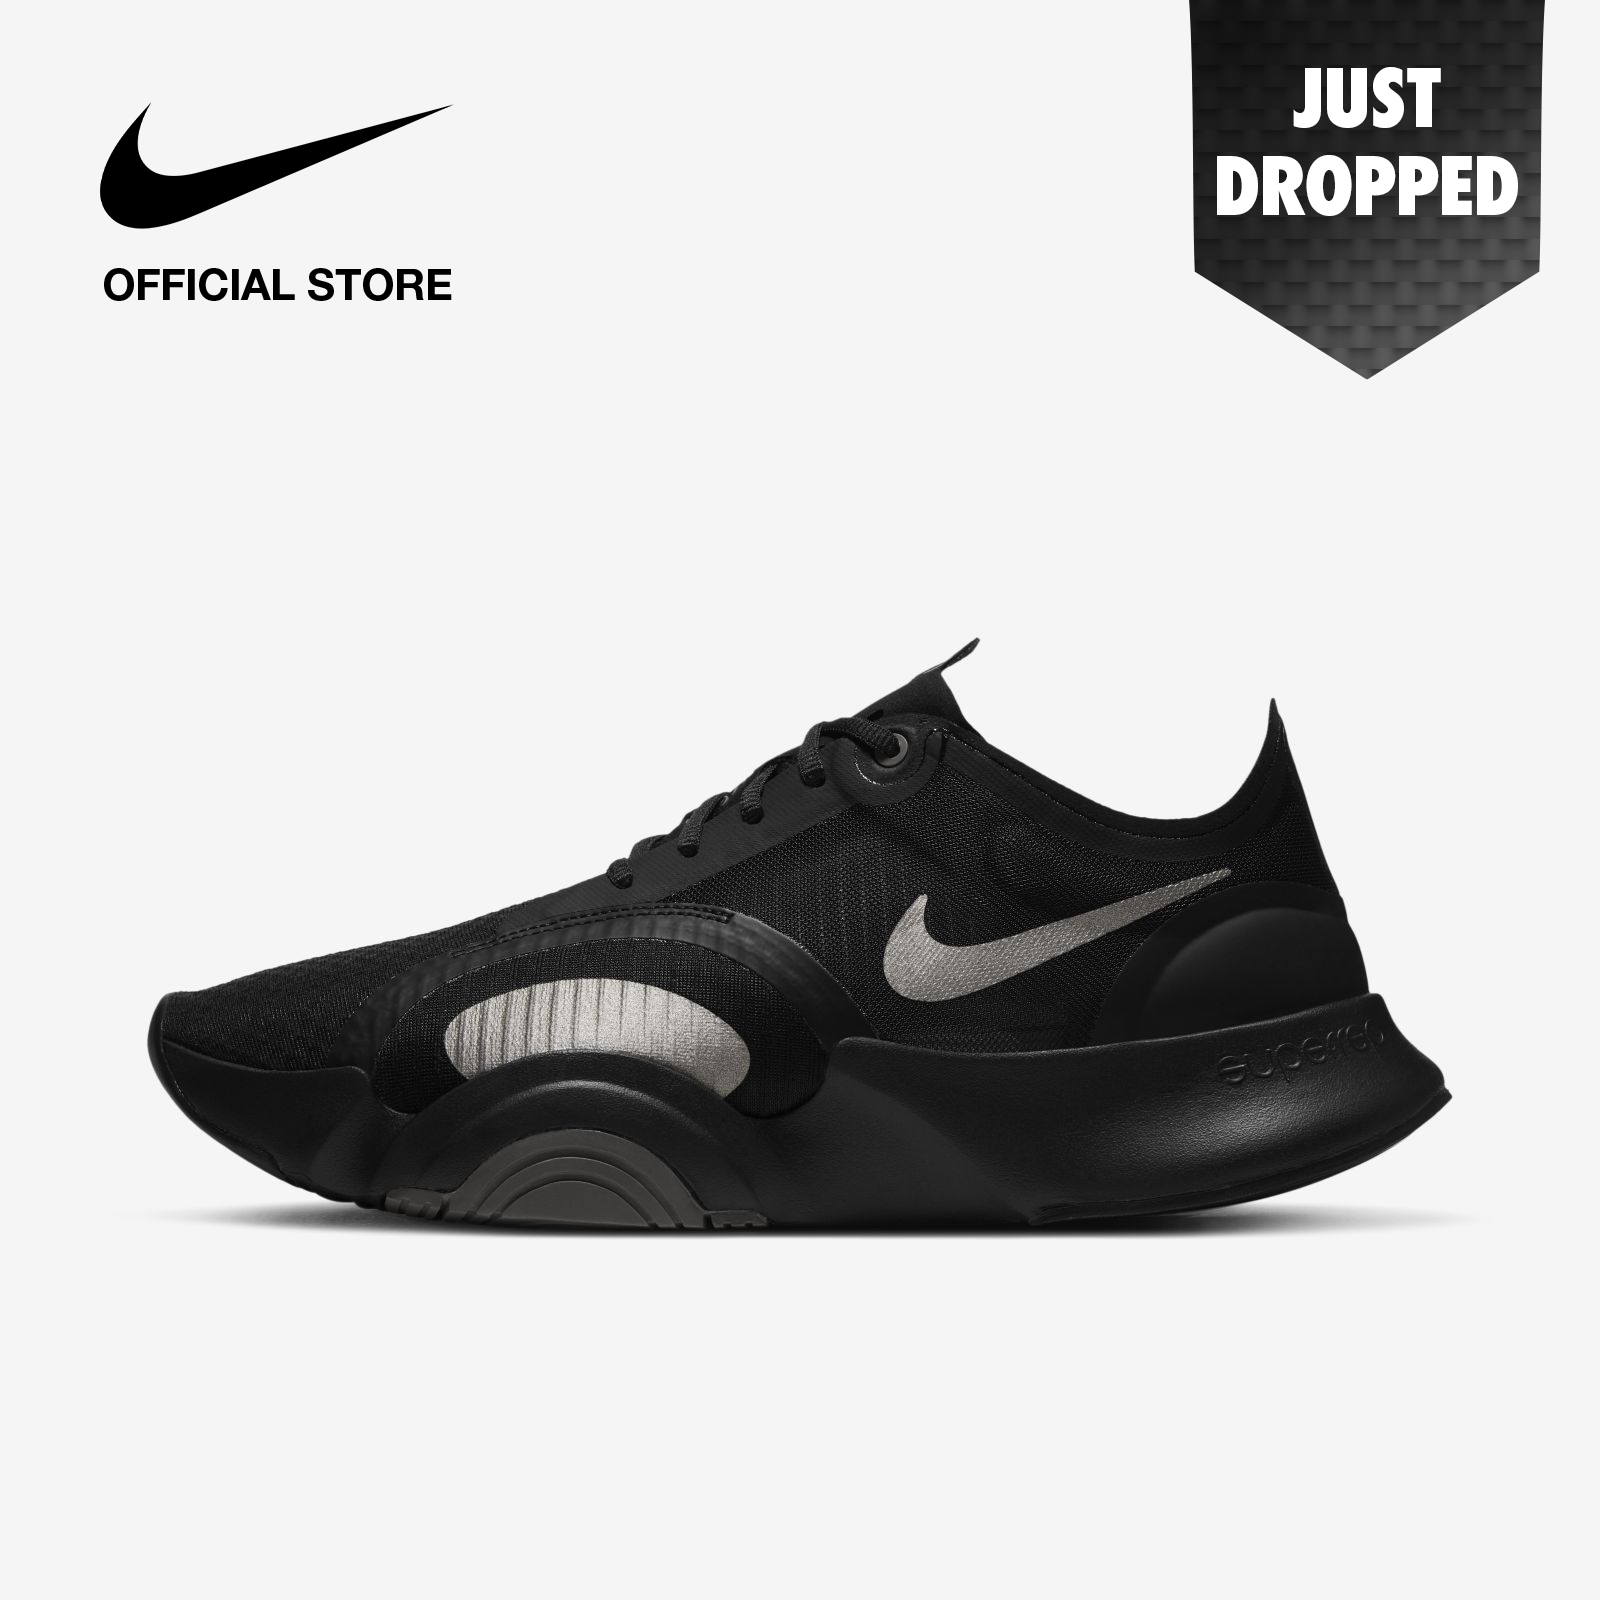 Nike Men's SuperRep Go Training Shoes - Black ไนกี้ รองเท้าเทรนนิ่งผู้ชาย ซุปเปอร์เรป โก - สีดำ